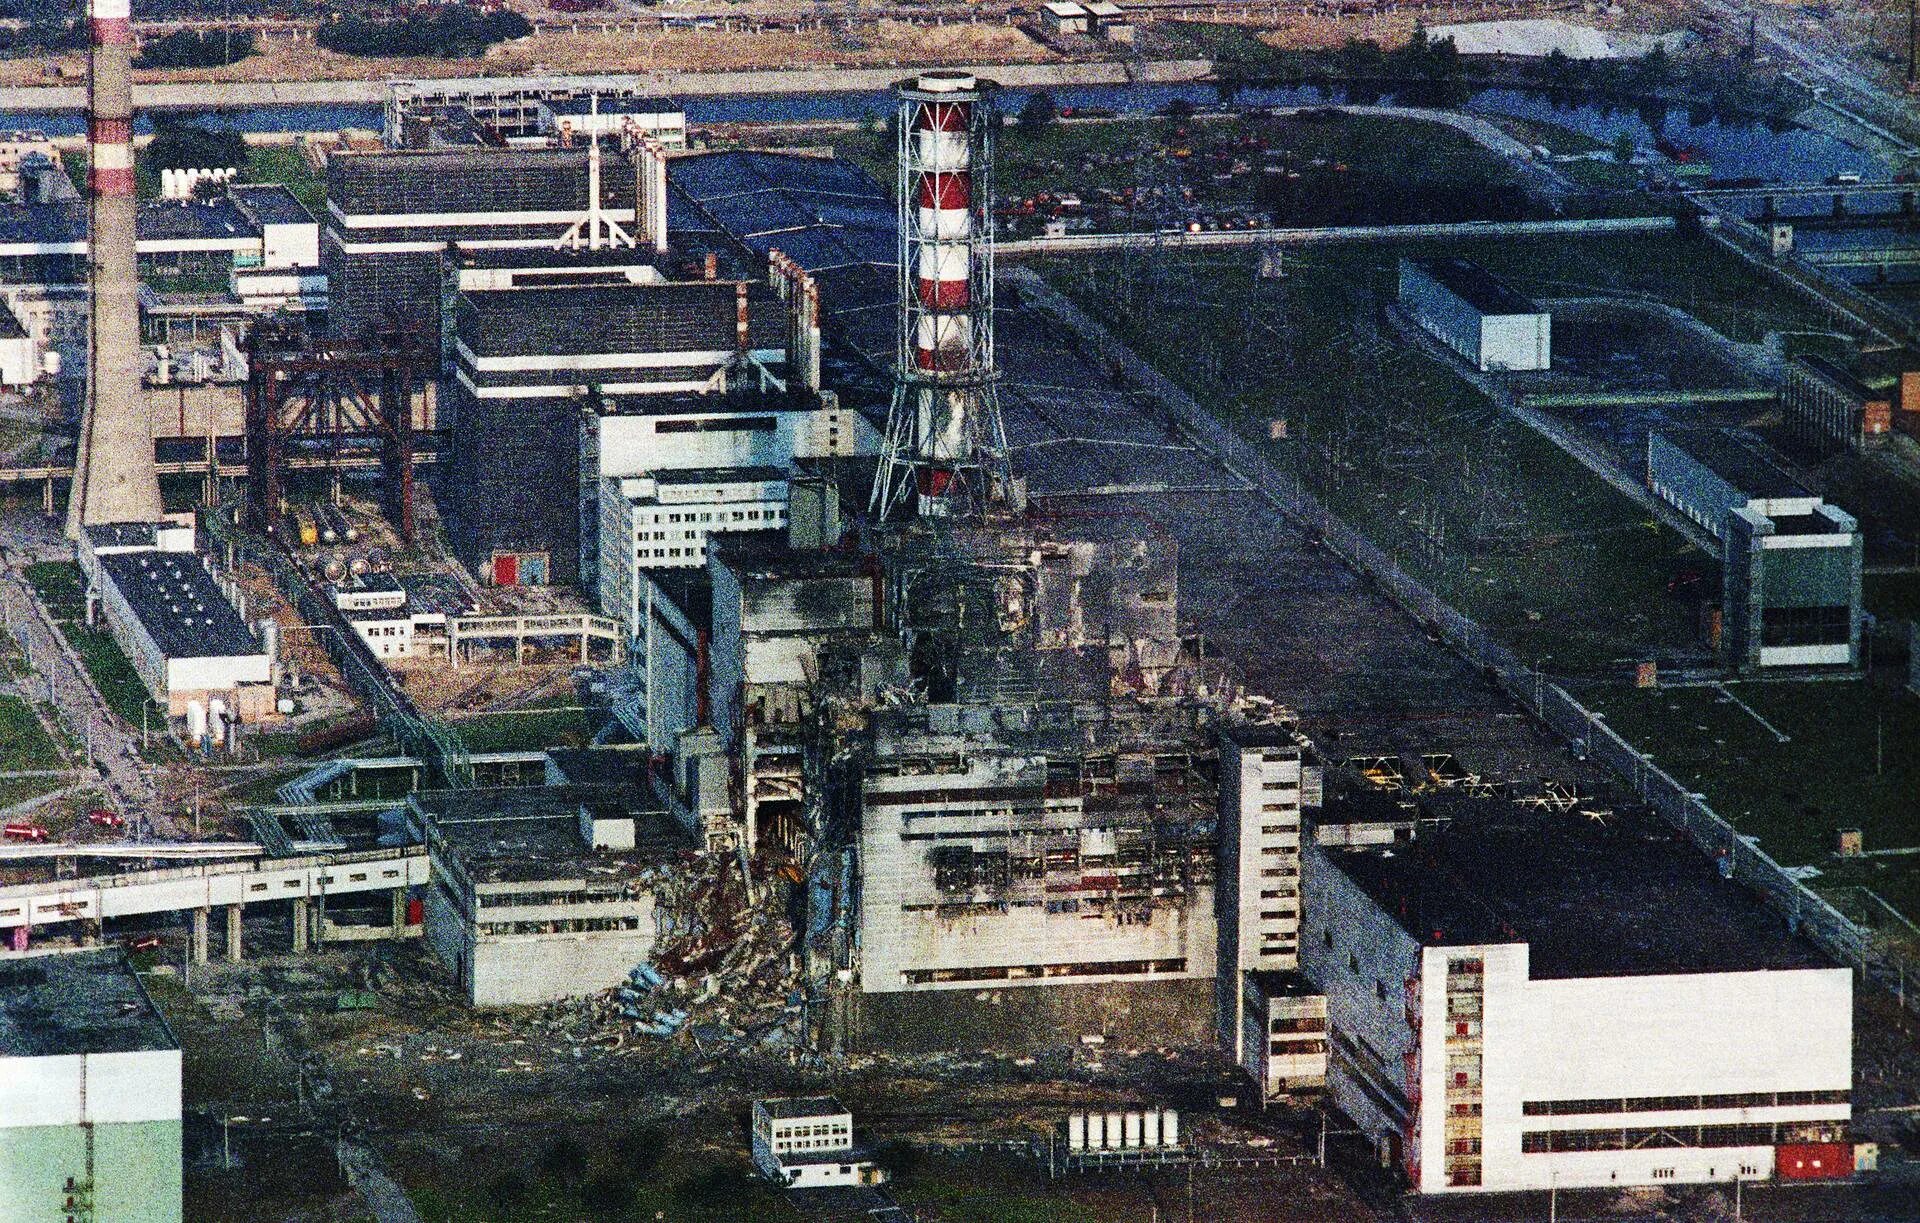 ЧАЭС реактор 1986. 4 Энергоблок ЧАЭС 1986. Катастрофа на Чернобыльской АЭС 1986 год. Припять ЧАЭС 1986. В каком году случилась чернобыльская аэс